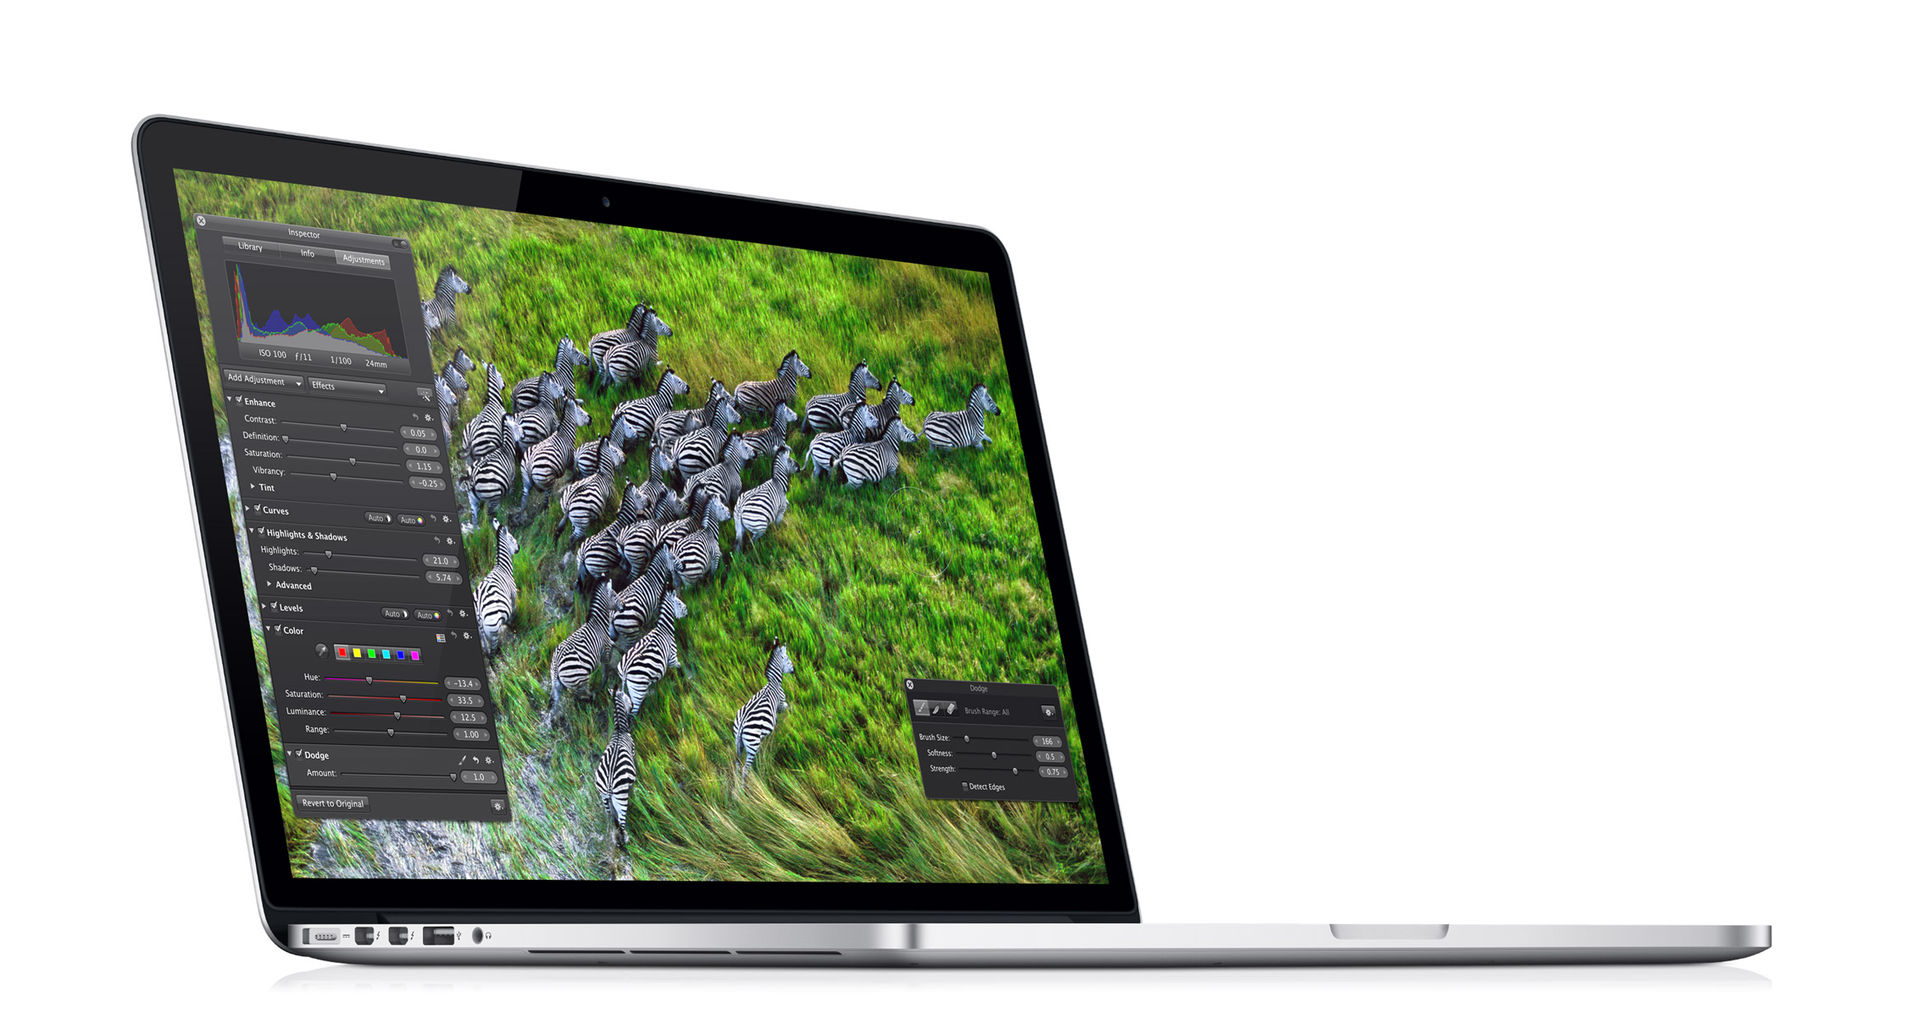 MacBook Pro Retinaディスプレイモデルの魅力とiPad3をMacBook Air風に見せる方法:モバイルタンク4